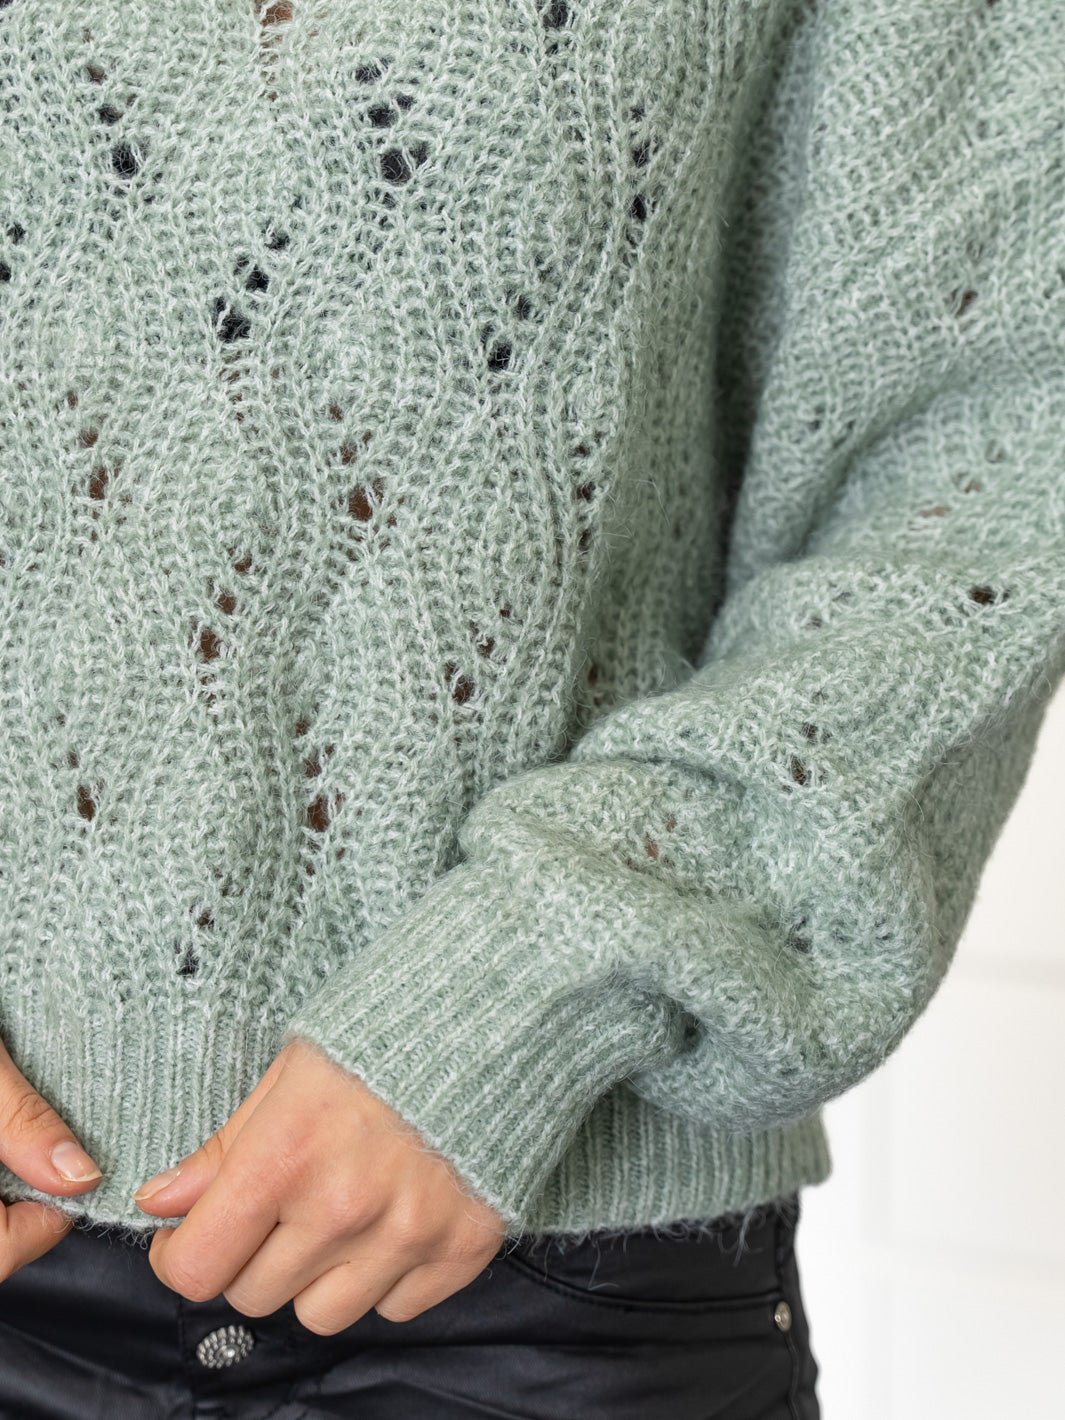 Culture CUkimmy knit pullover green milieu melange - Online-Mode